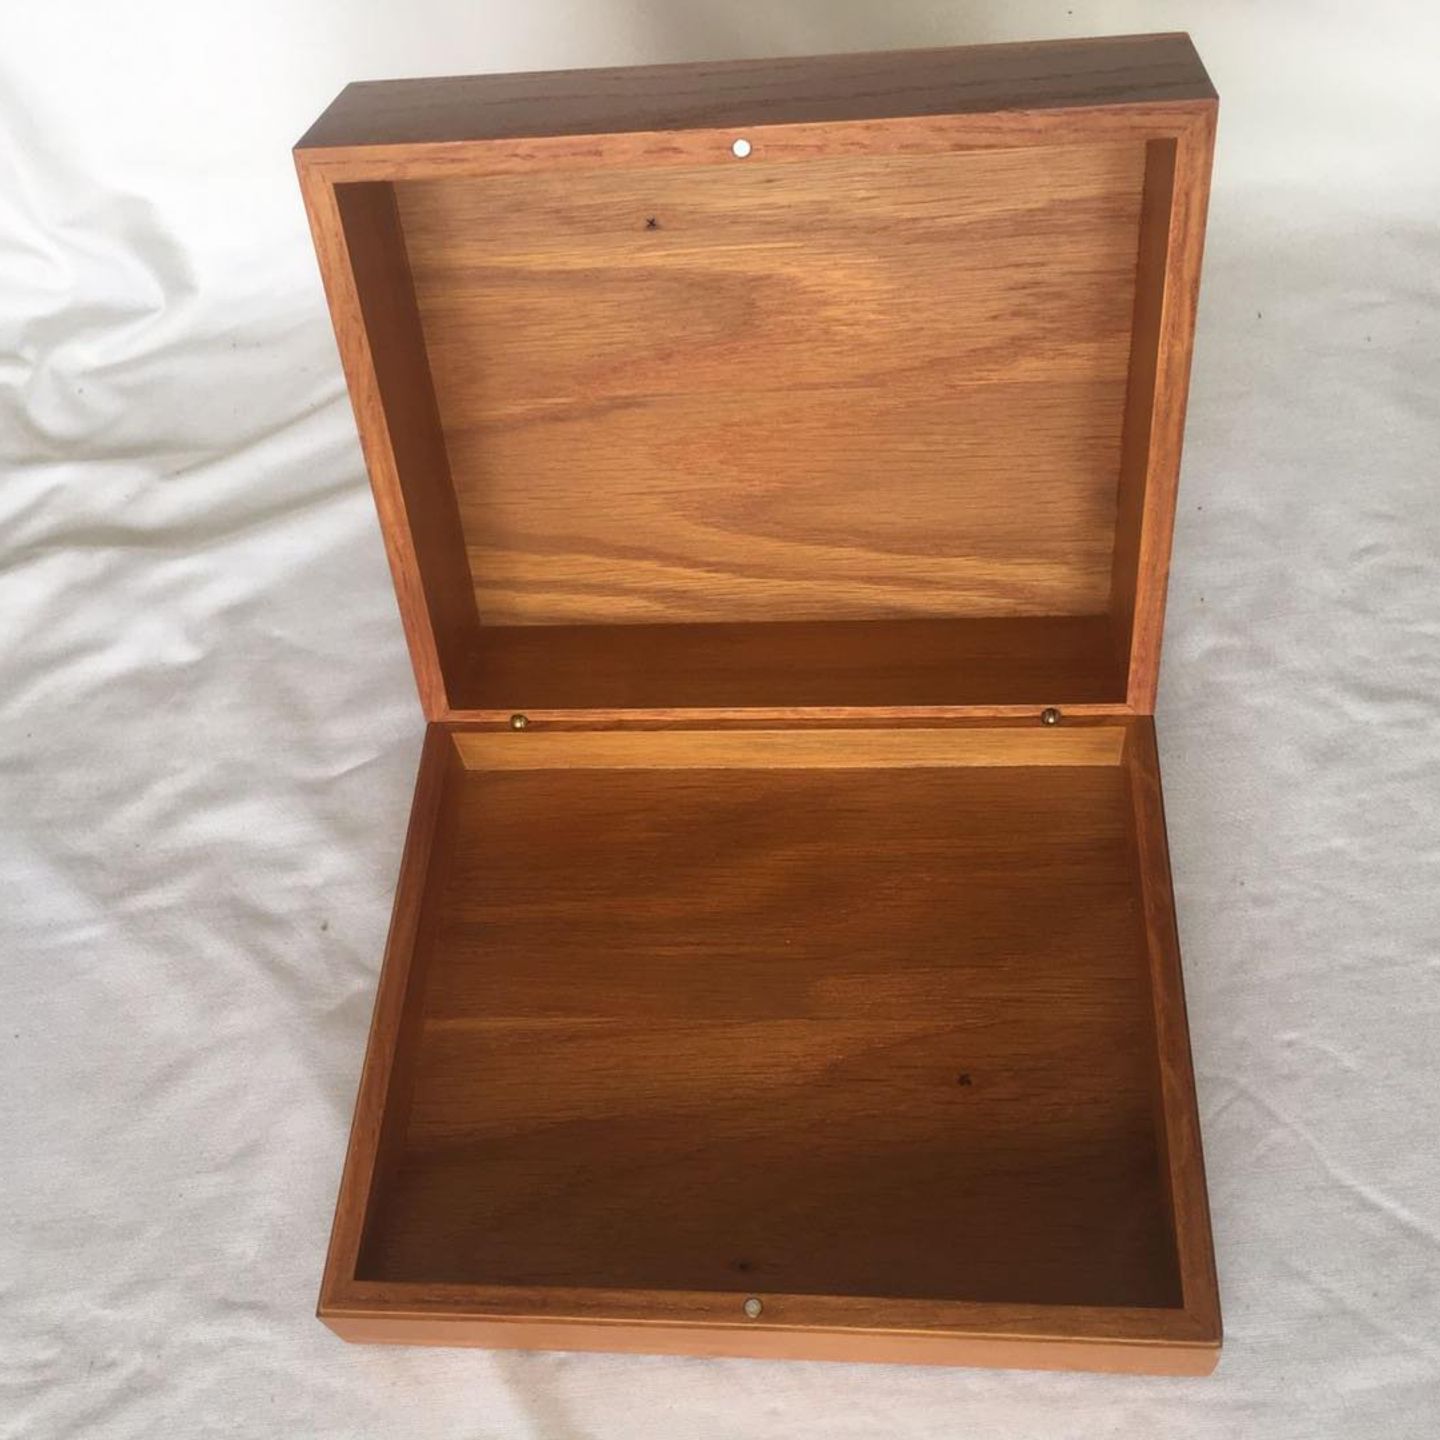 WBX-01 Wooden Box